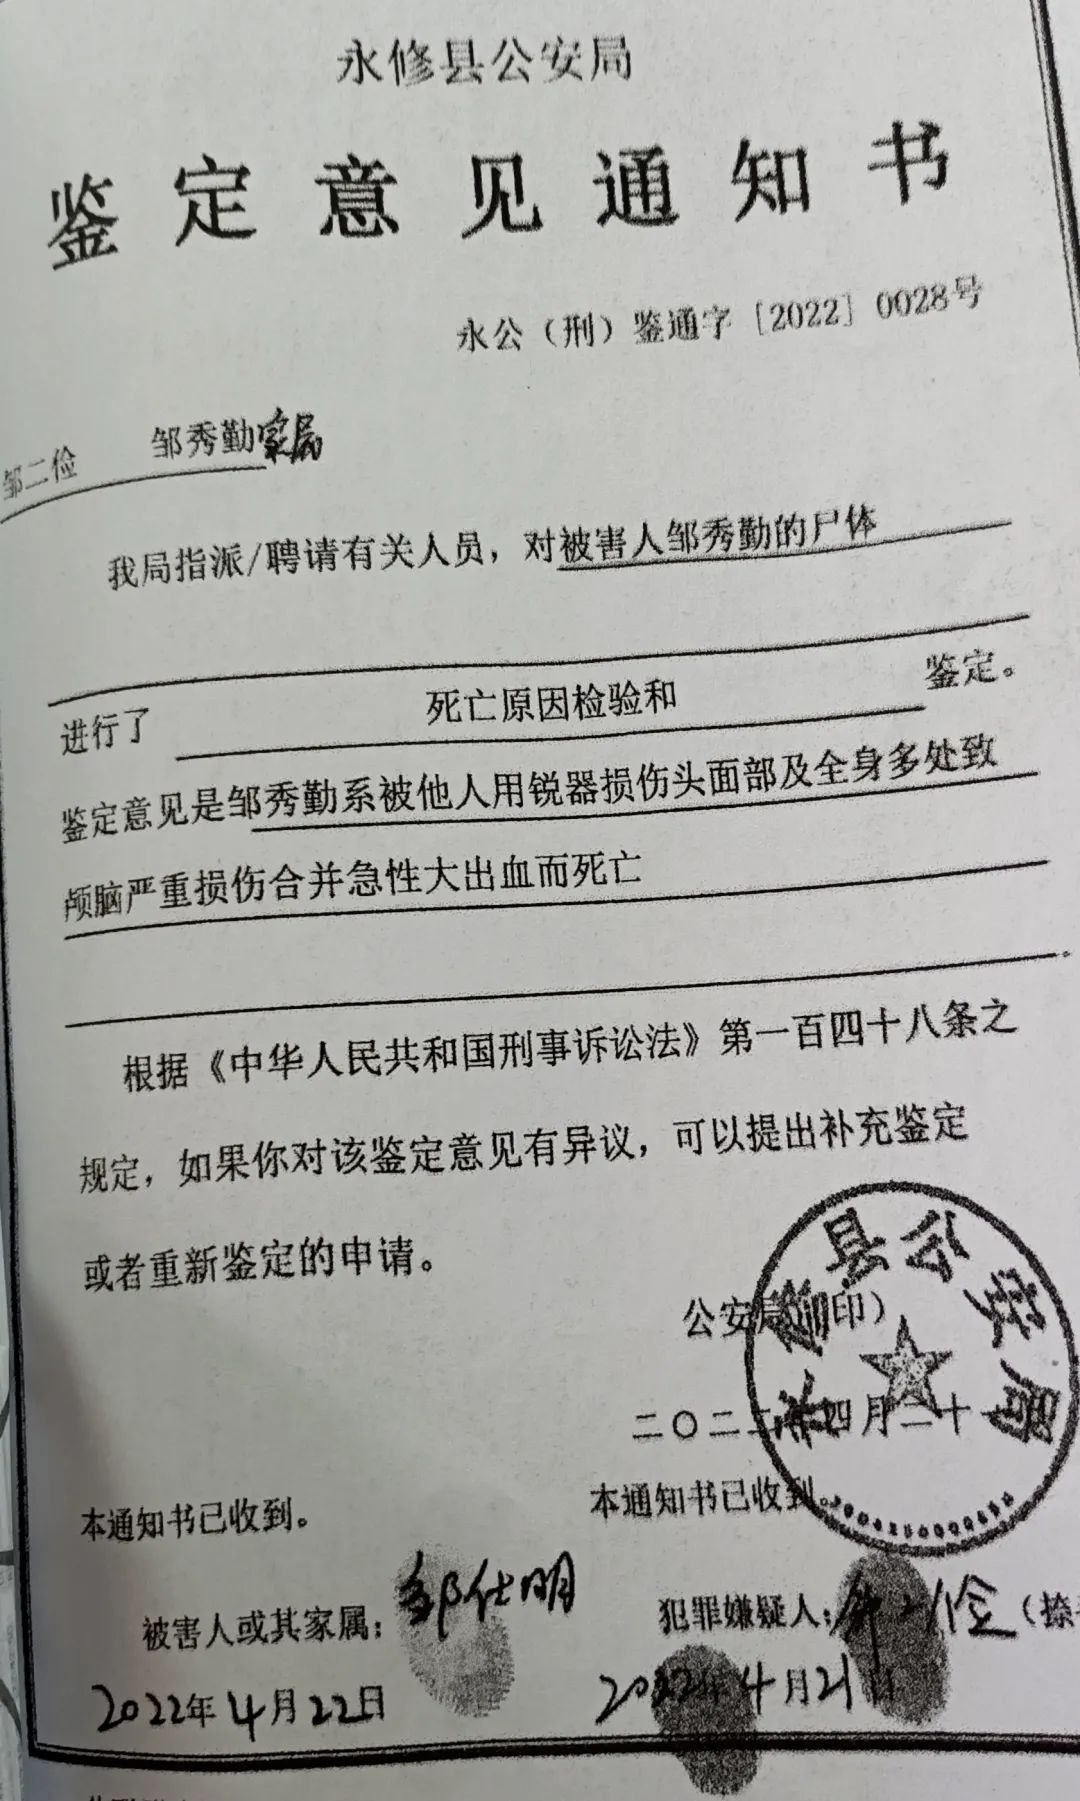 上海一男子“夺刀反伤” 检方以故意伤害罪提起公诉|上海_新浪新闻